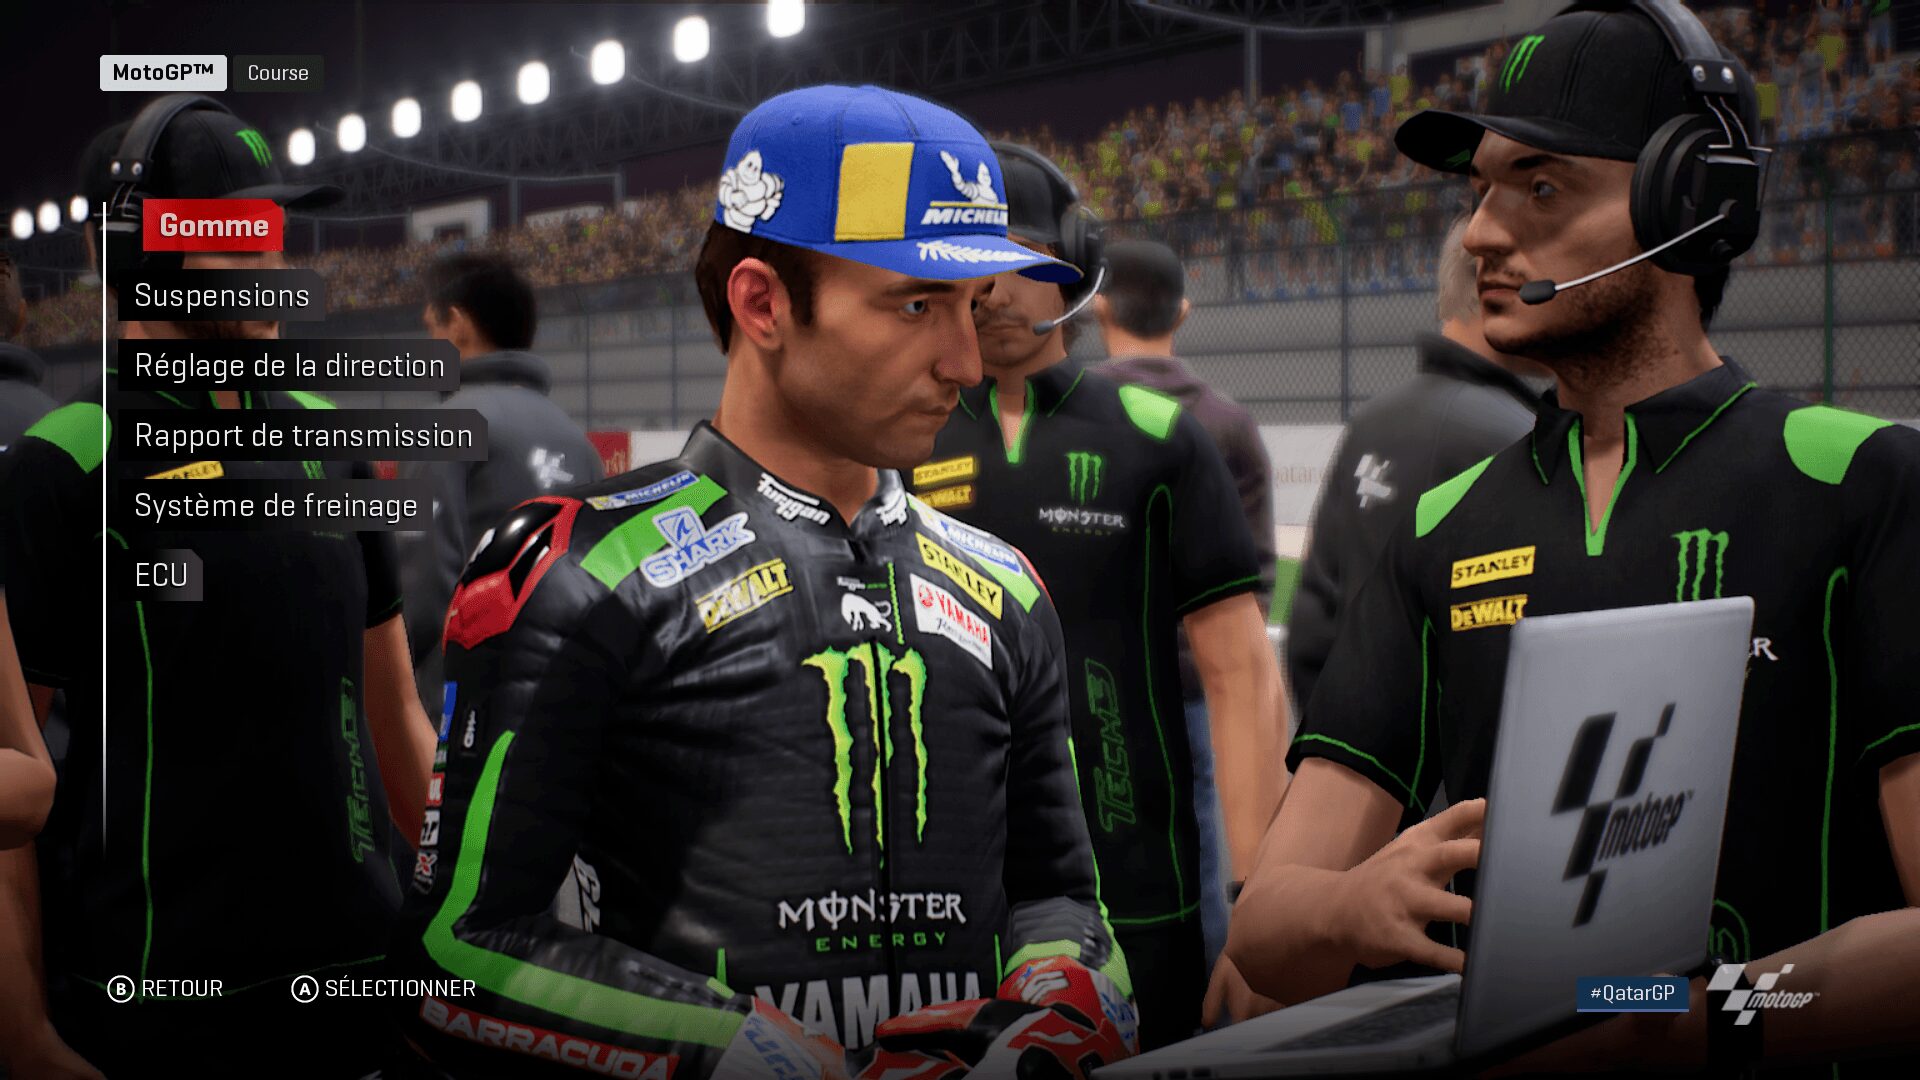 MotoGP 18 Kresys MotoGP18 20180904 17 05 05 MotoGP 18 – La simulation moto par excellence ? gaming